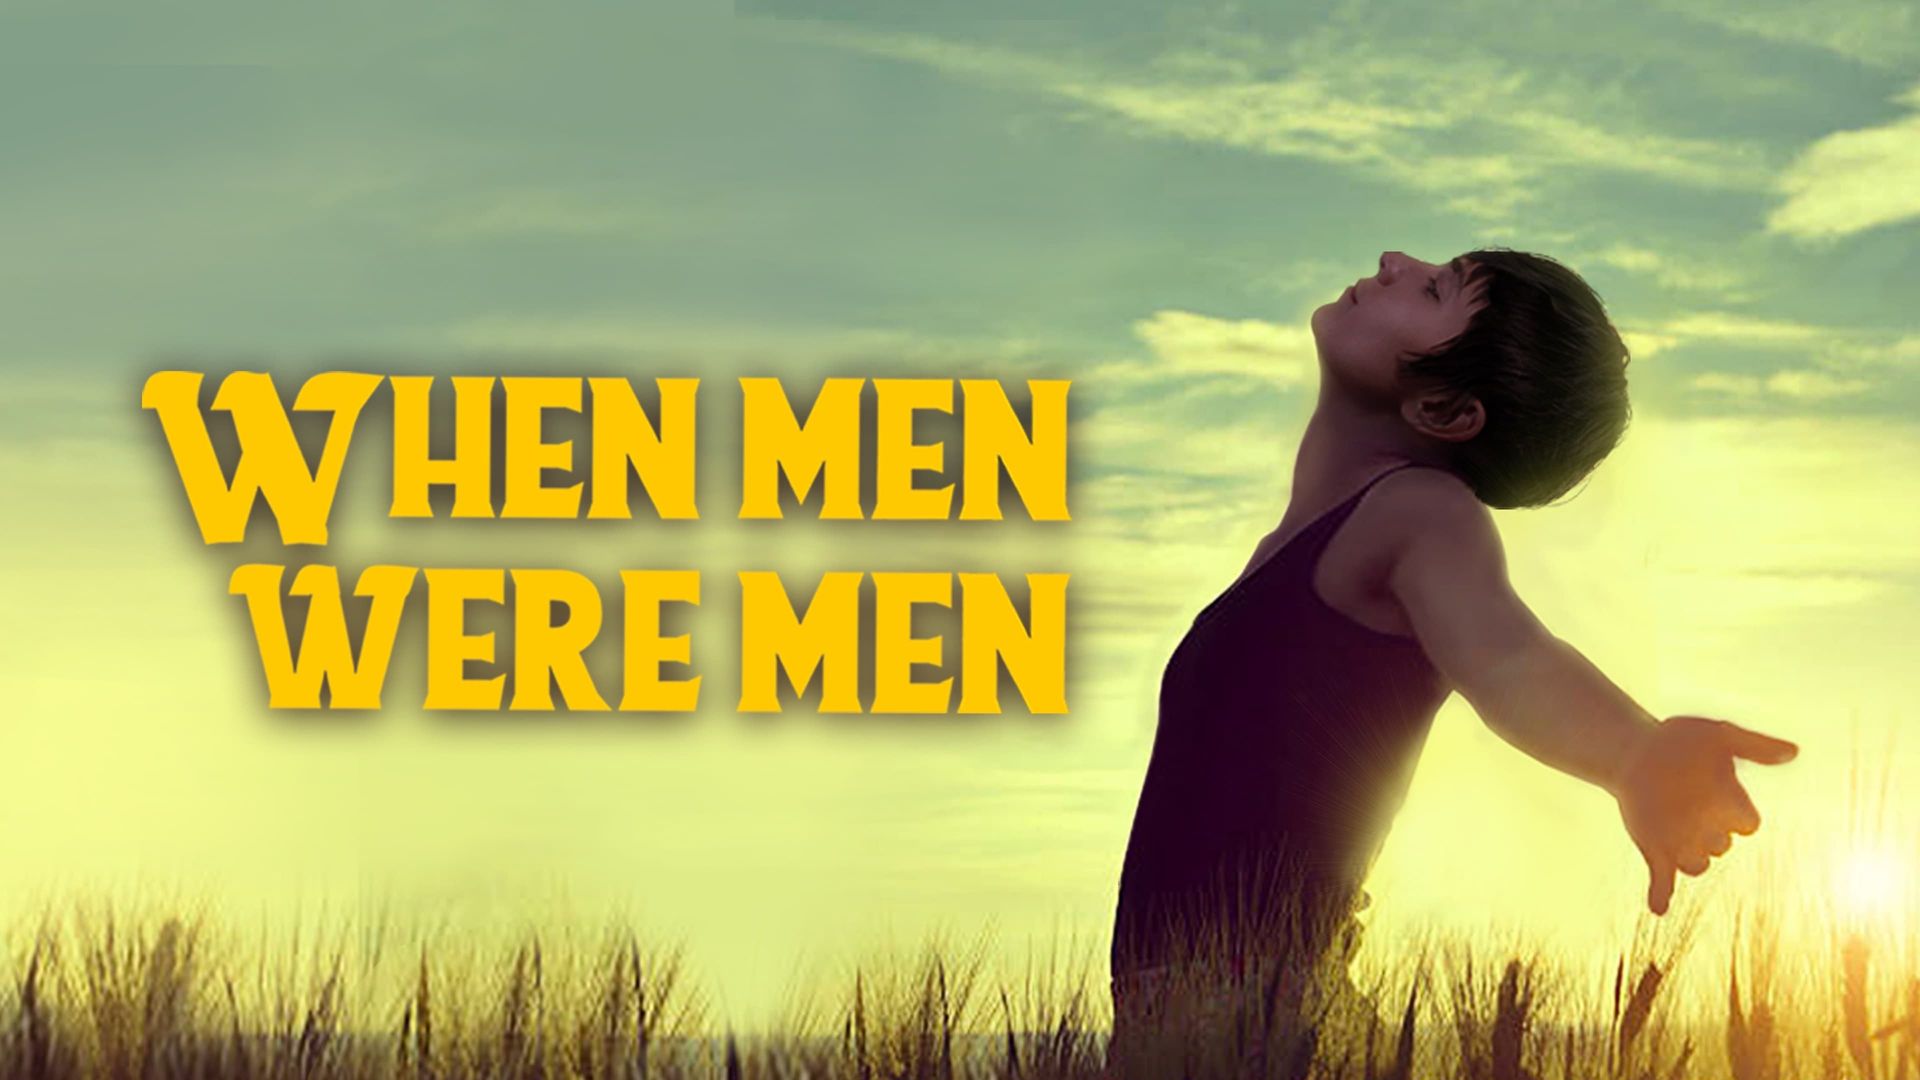 When Men Were Men background